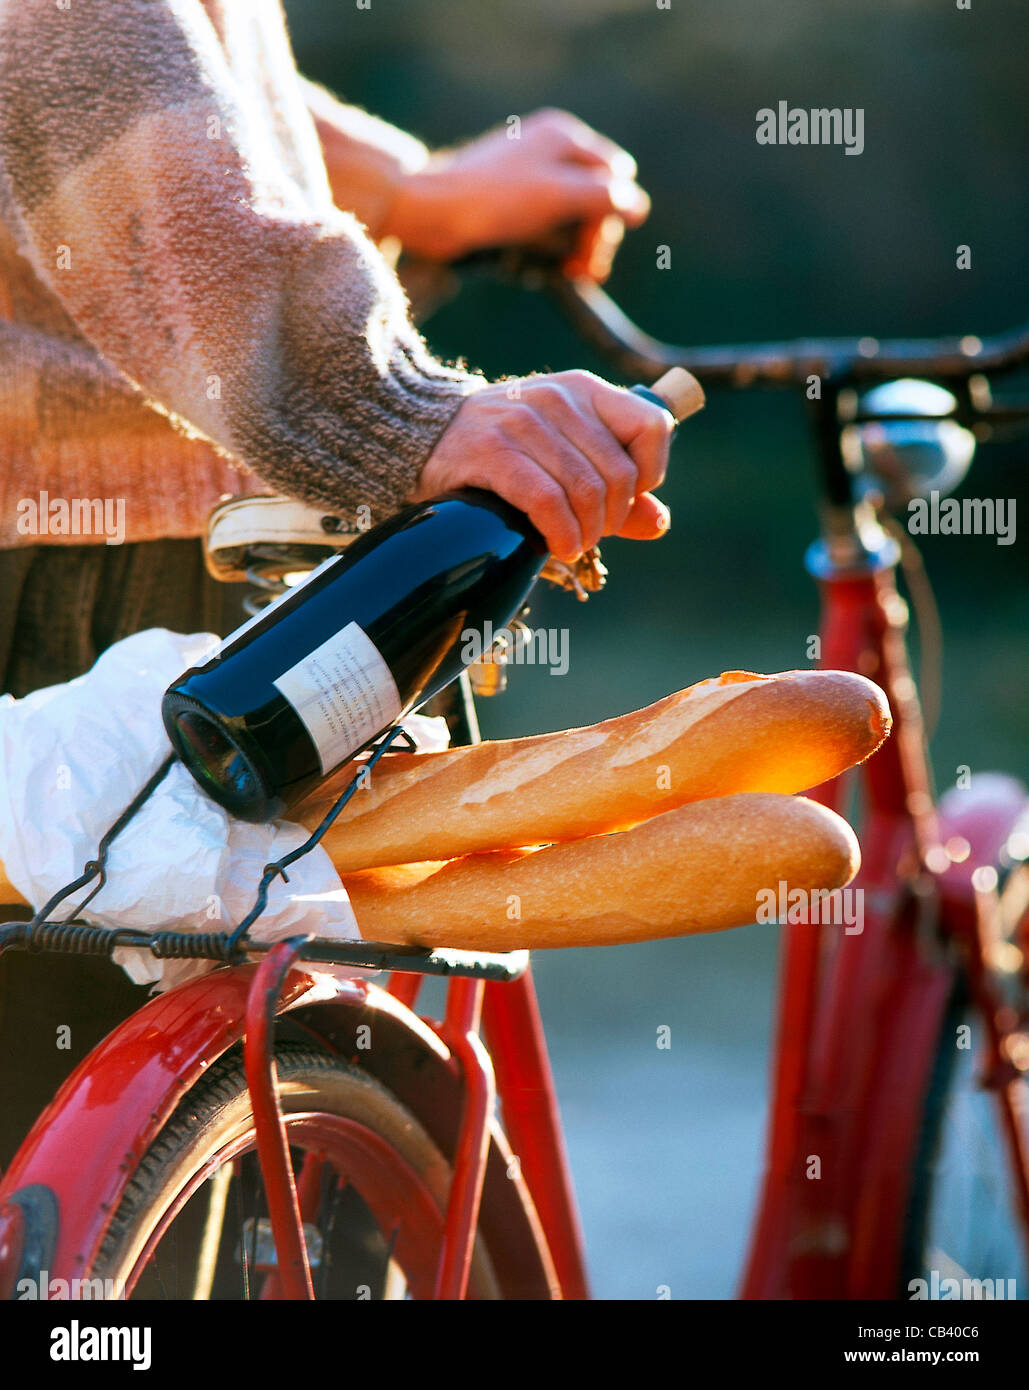 Dennoch: Mann mit Fahrrad, eine Flasche Rotwein in der Hand, Baguette auf Träger Stockfoto